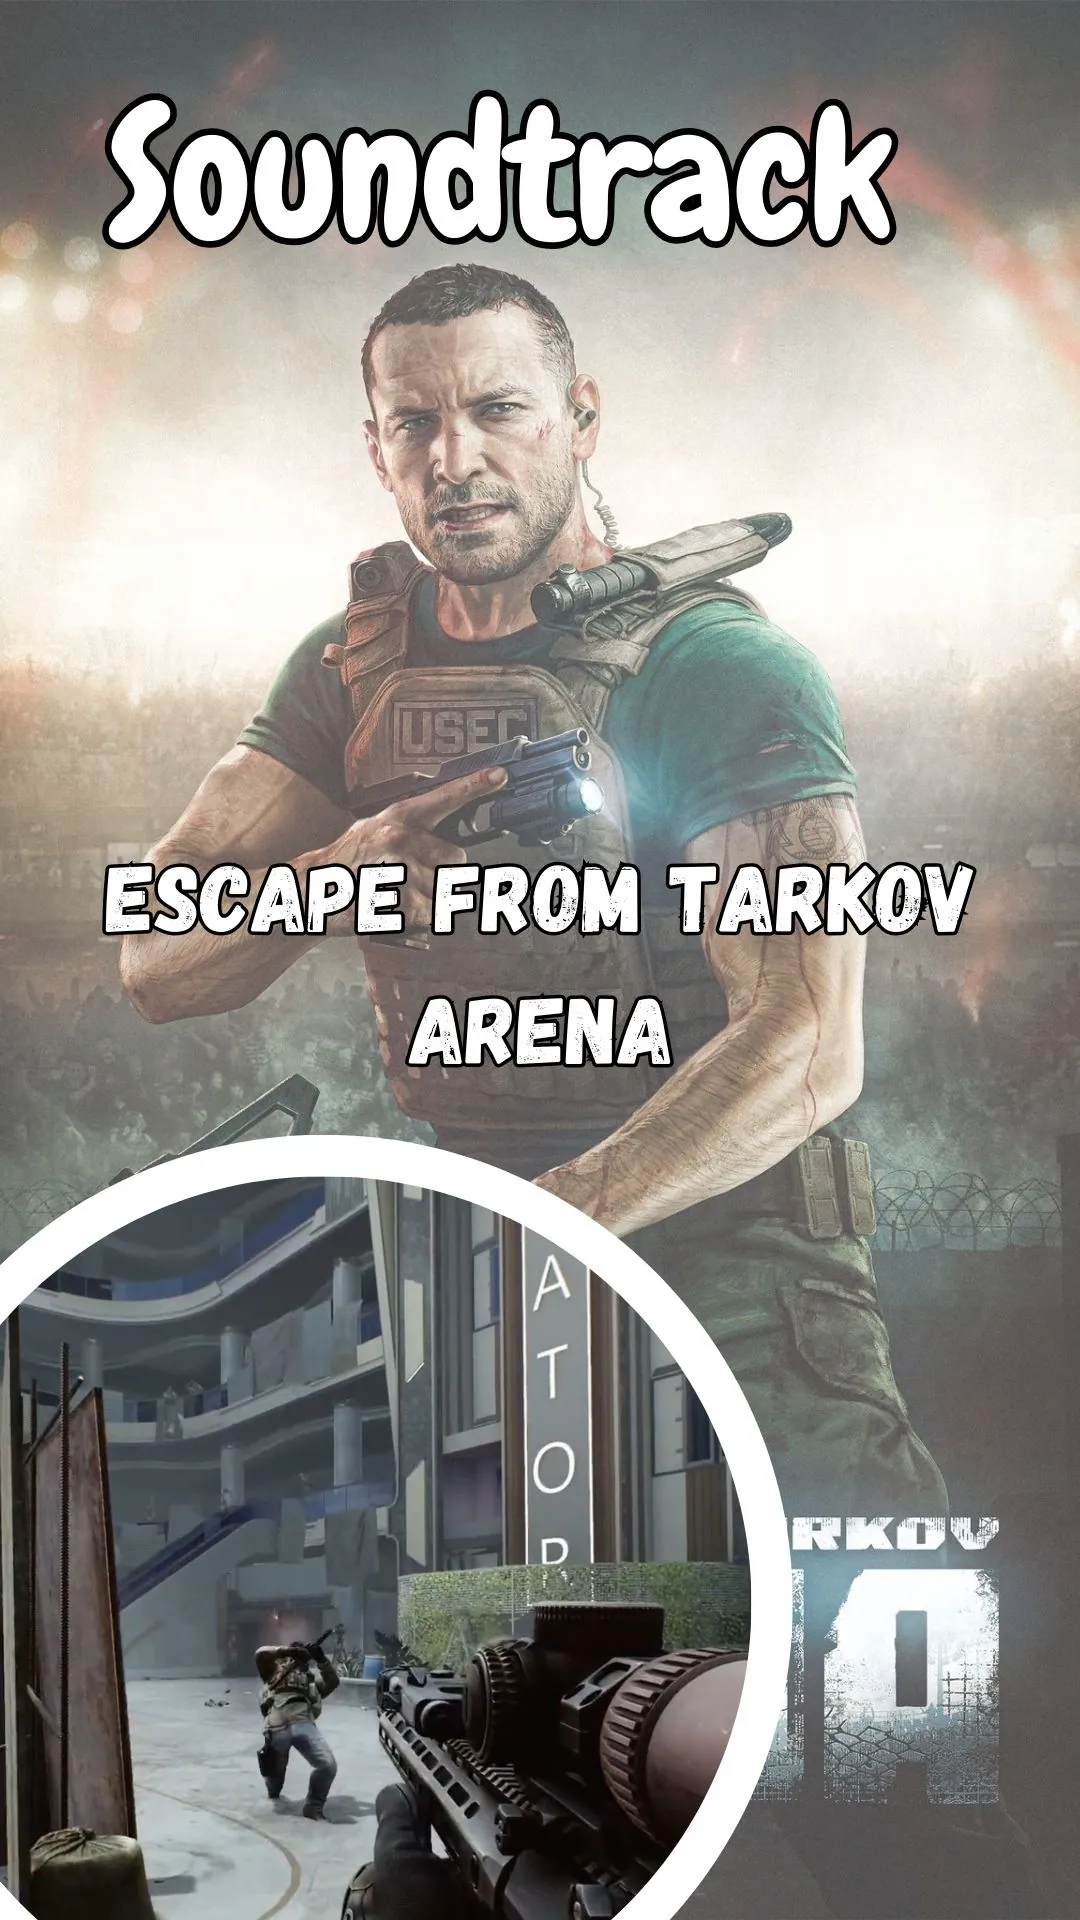 Escape from Tarkov Arena Soundtrack (Video Game)